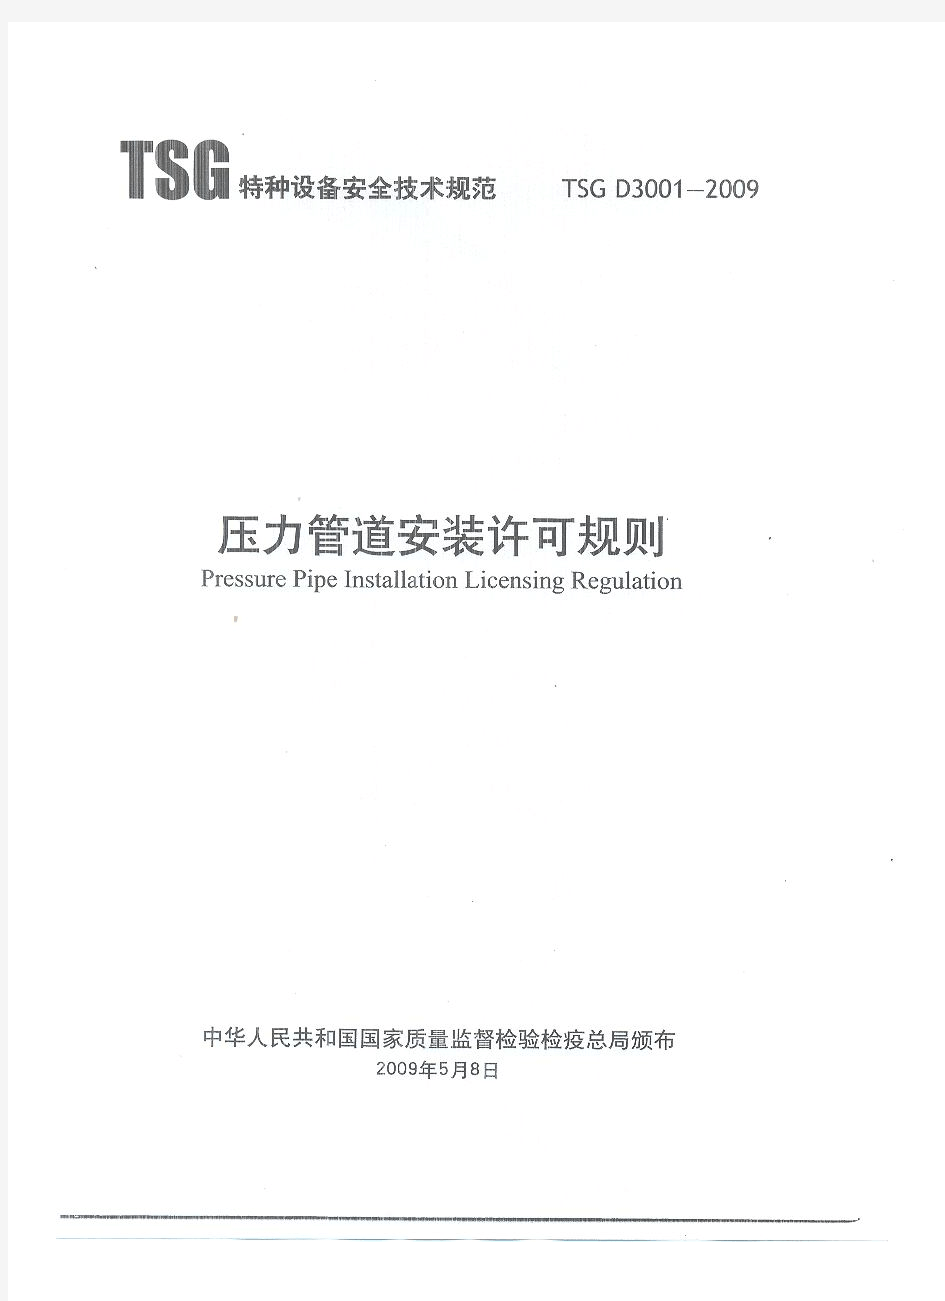 TSG D3001-2009《压力管道安装许可规则》